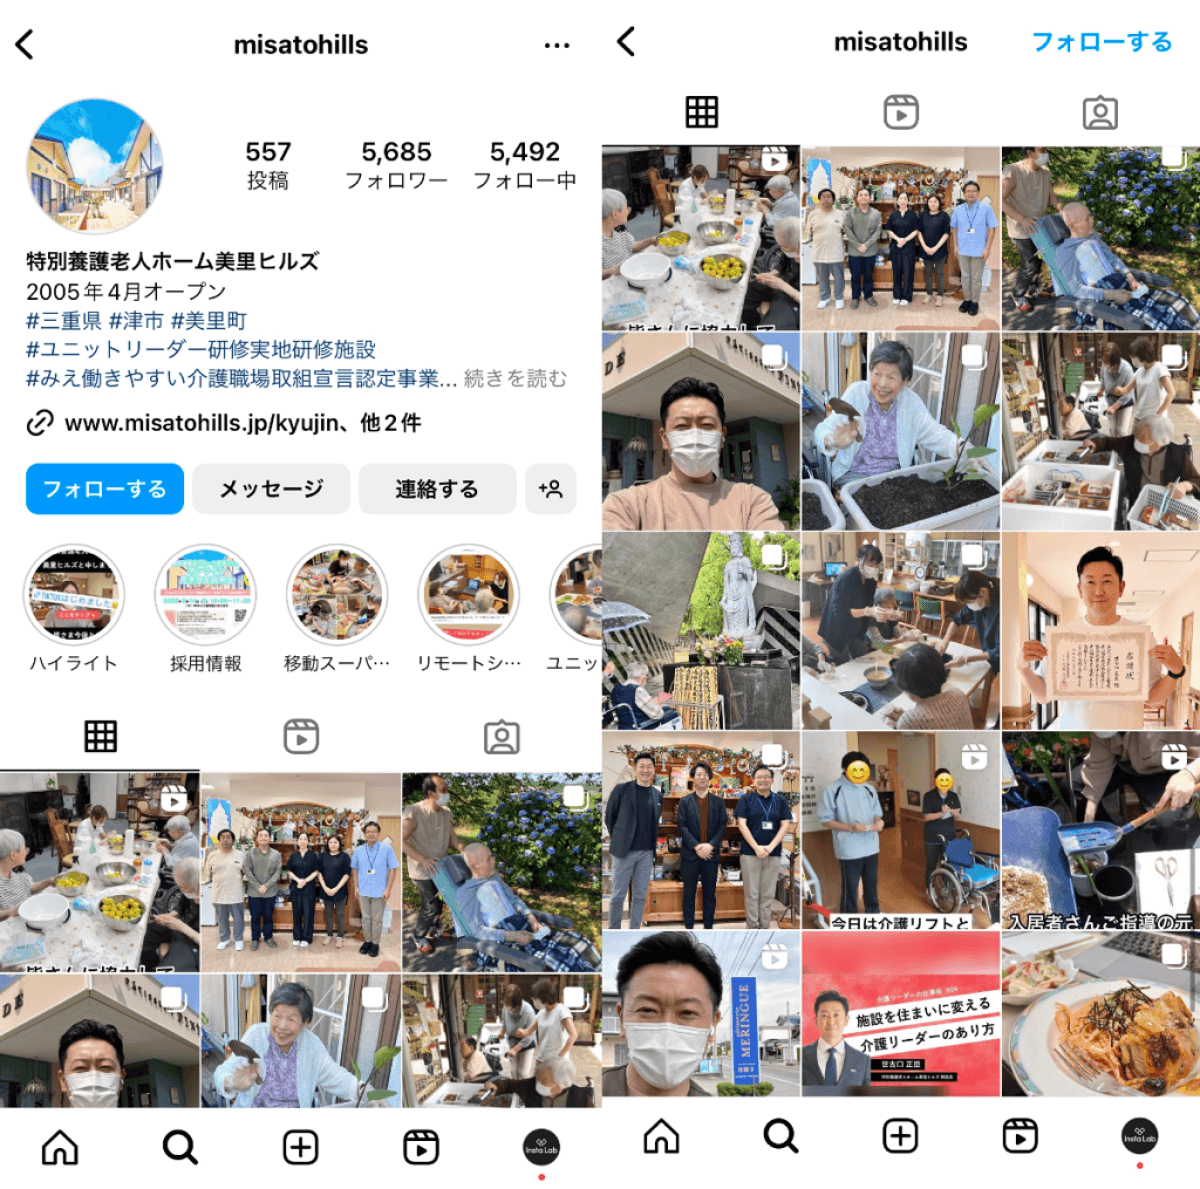 instagram-account-misatohills